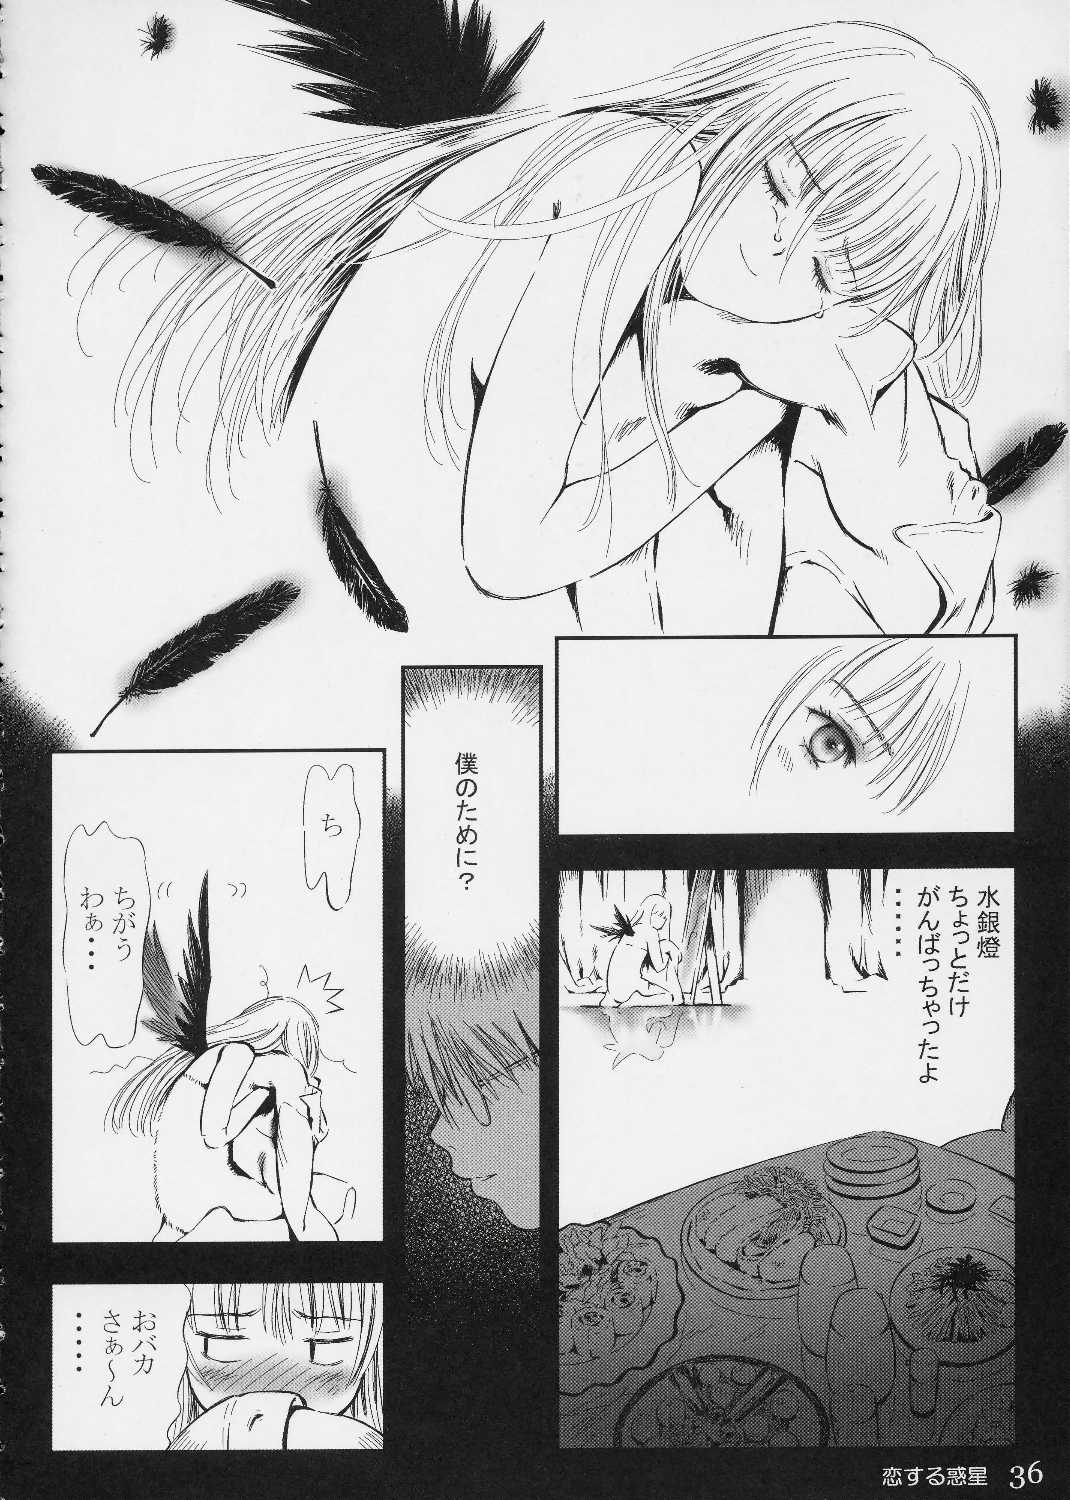 [charm] koisuru wakusei 2 (rosen maiden) (同人誌) [charm] 恋する惑星2 (ローゼンメイデン)